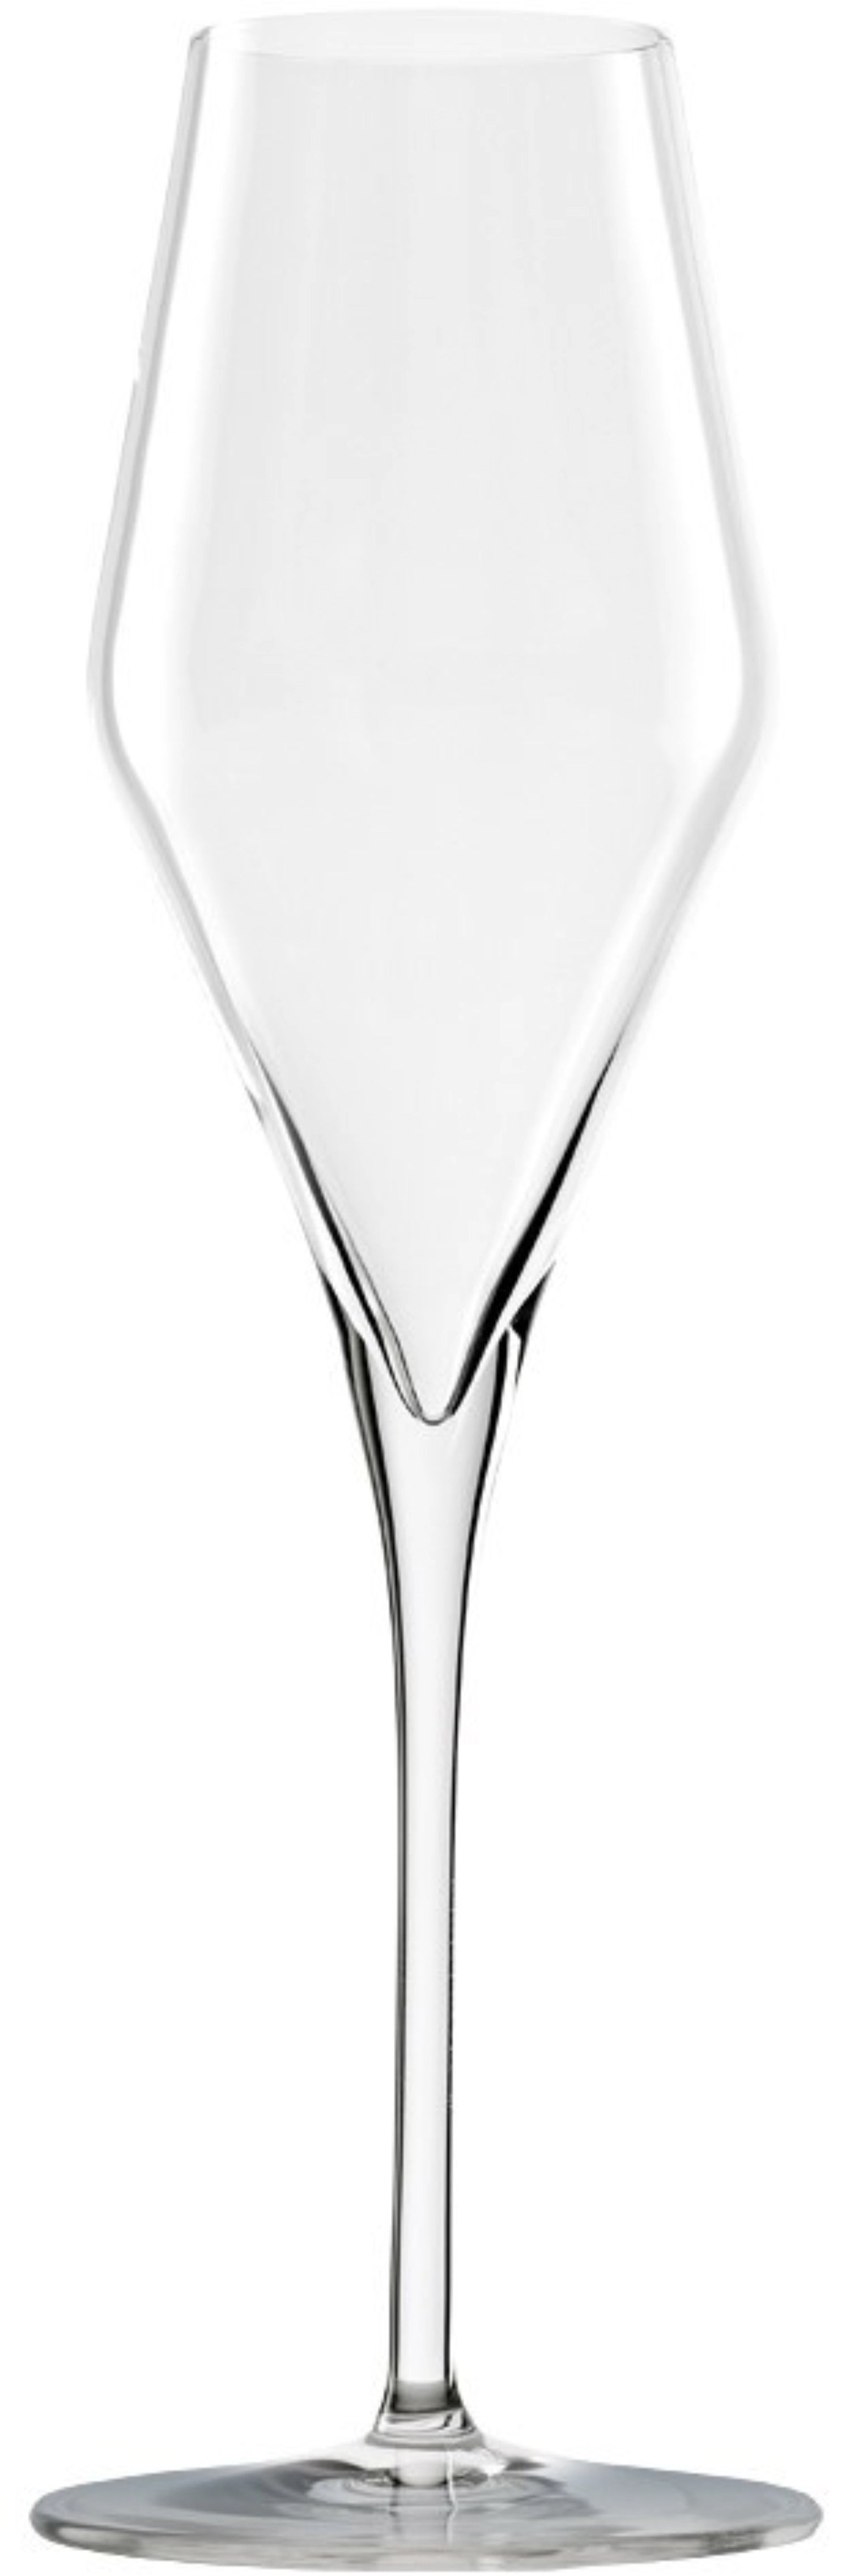 Highlight Champagnerkelch 290ml h: 260mm - KAQTU Design